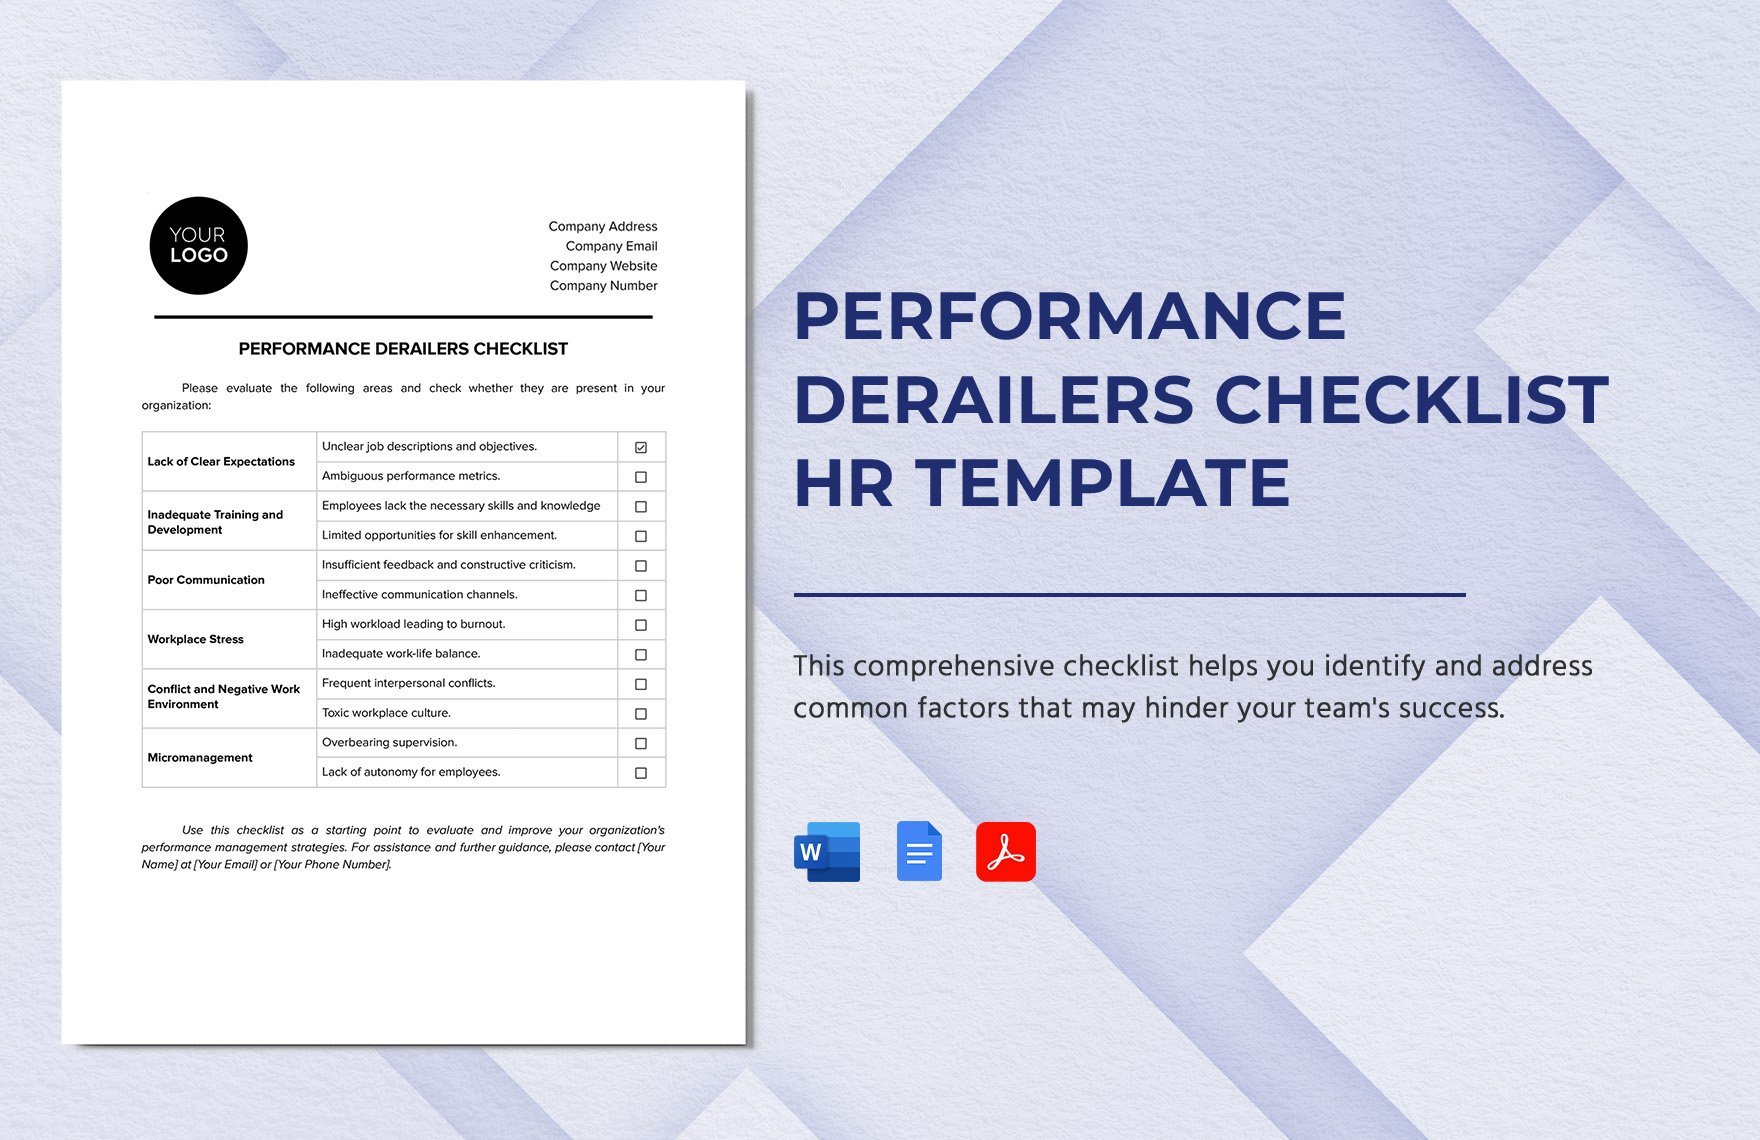 Performance Derailers Checklist HR Template